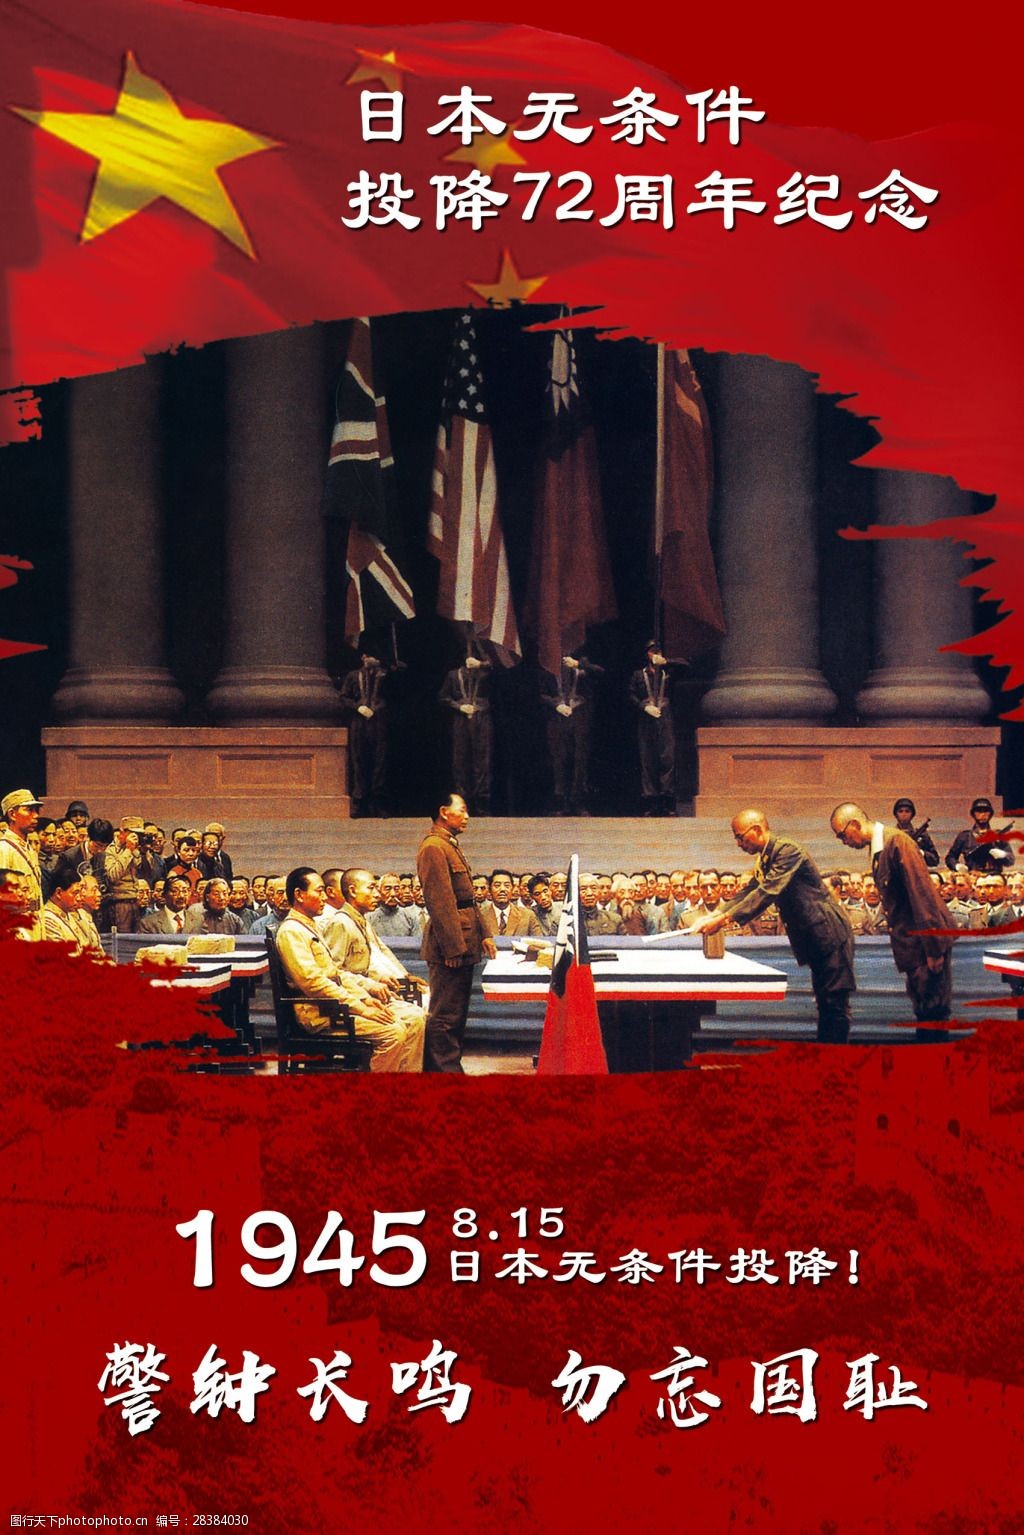 无条件投降1 日本投降 爱国主义 爱国精神 教育系列 抗日战争 海报